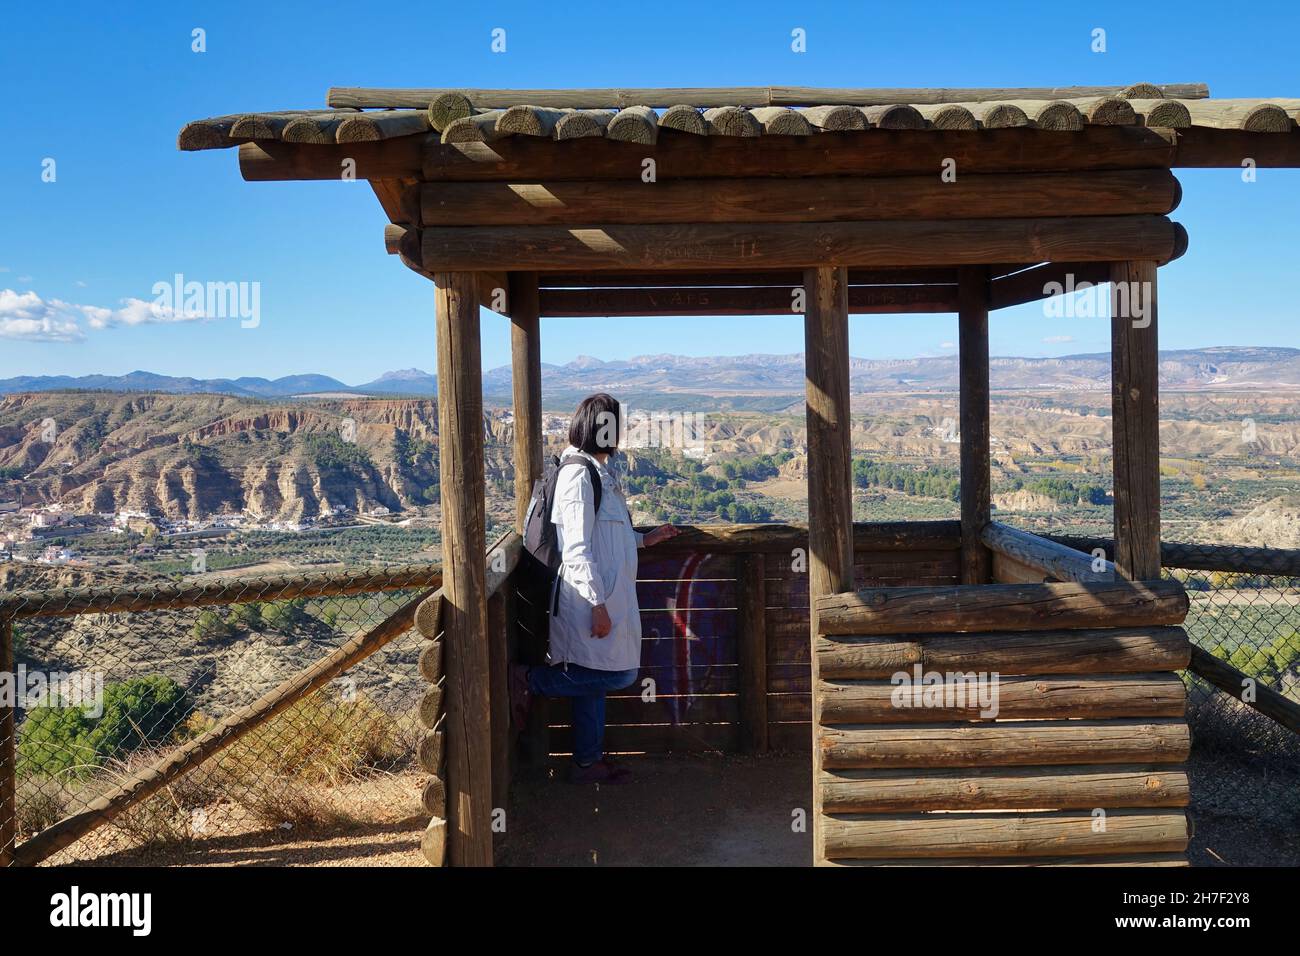 Mujer de 50 años de edad con chubasquero y mochila admirando el paisaje de los badlands de Marchal (España) y sus casas cueva desde un mirador de madera Foto de stock